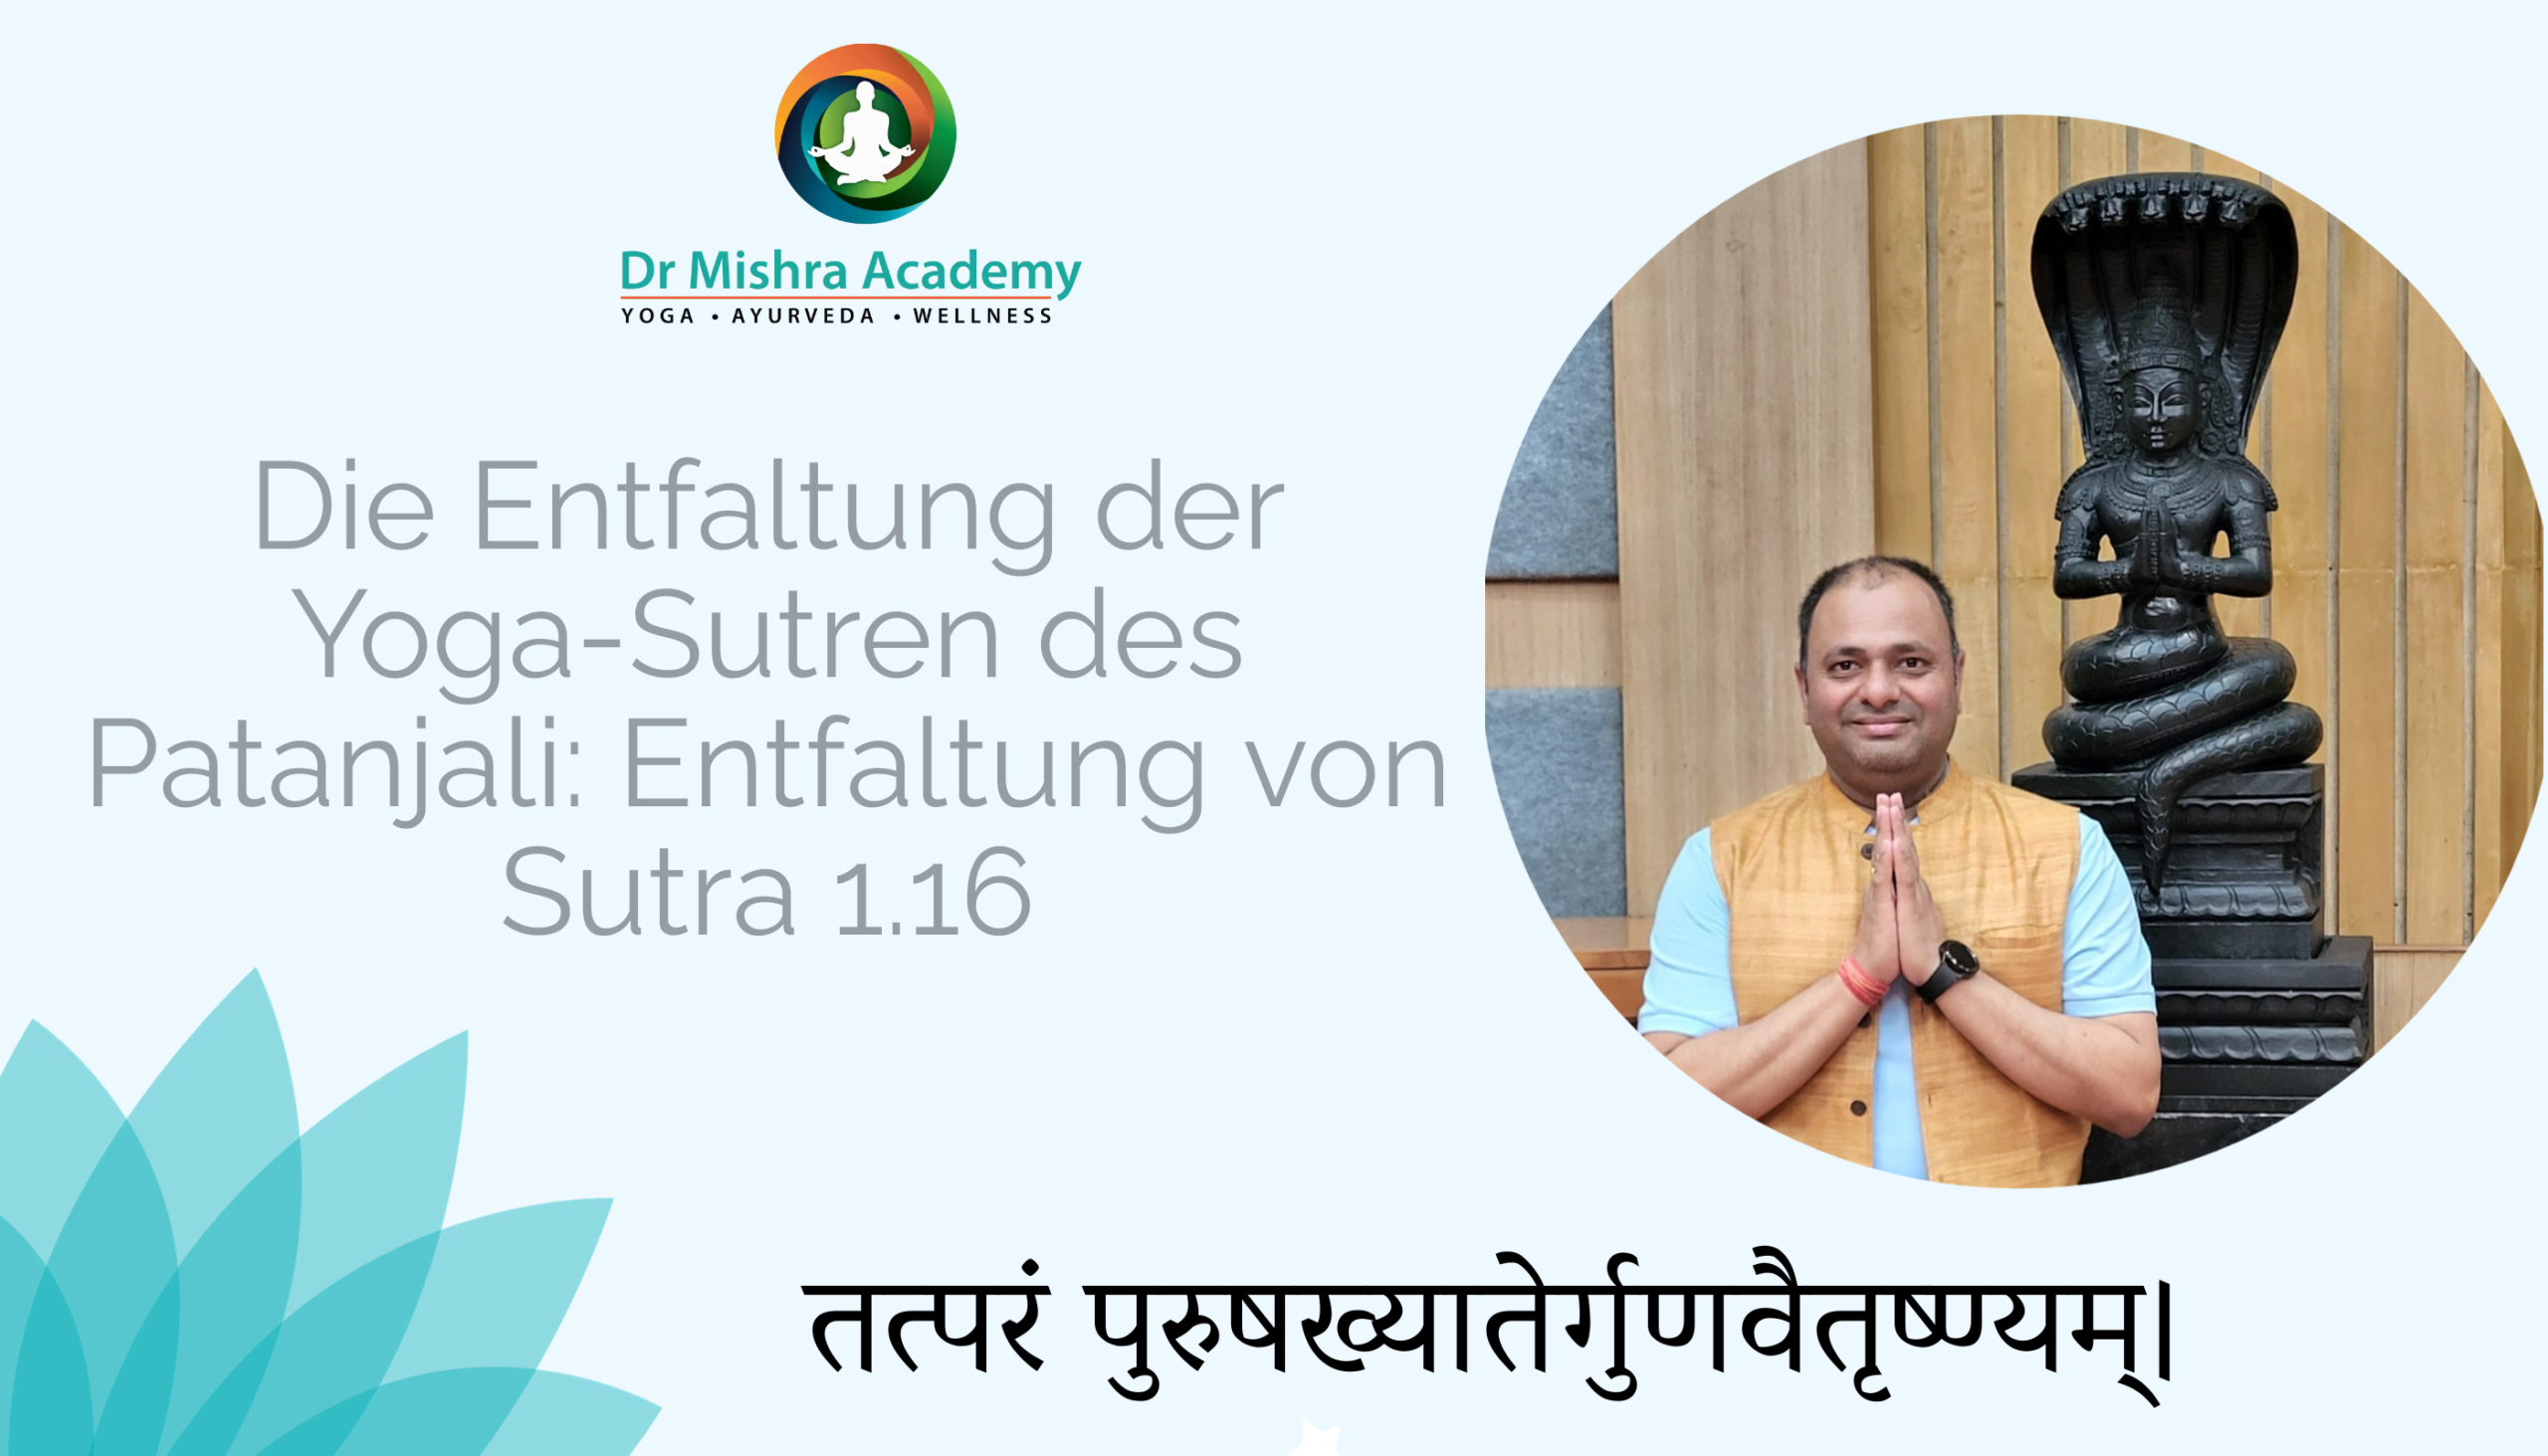 Die Yoga-Sutras von Patanjali erforschen: Entfaltung Sutra 1.16